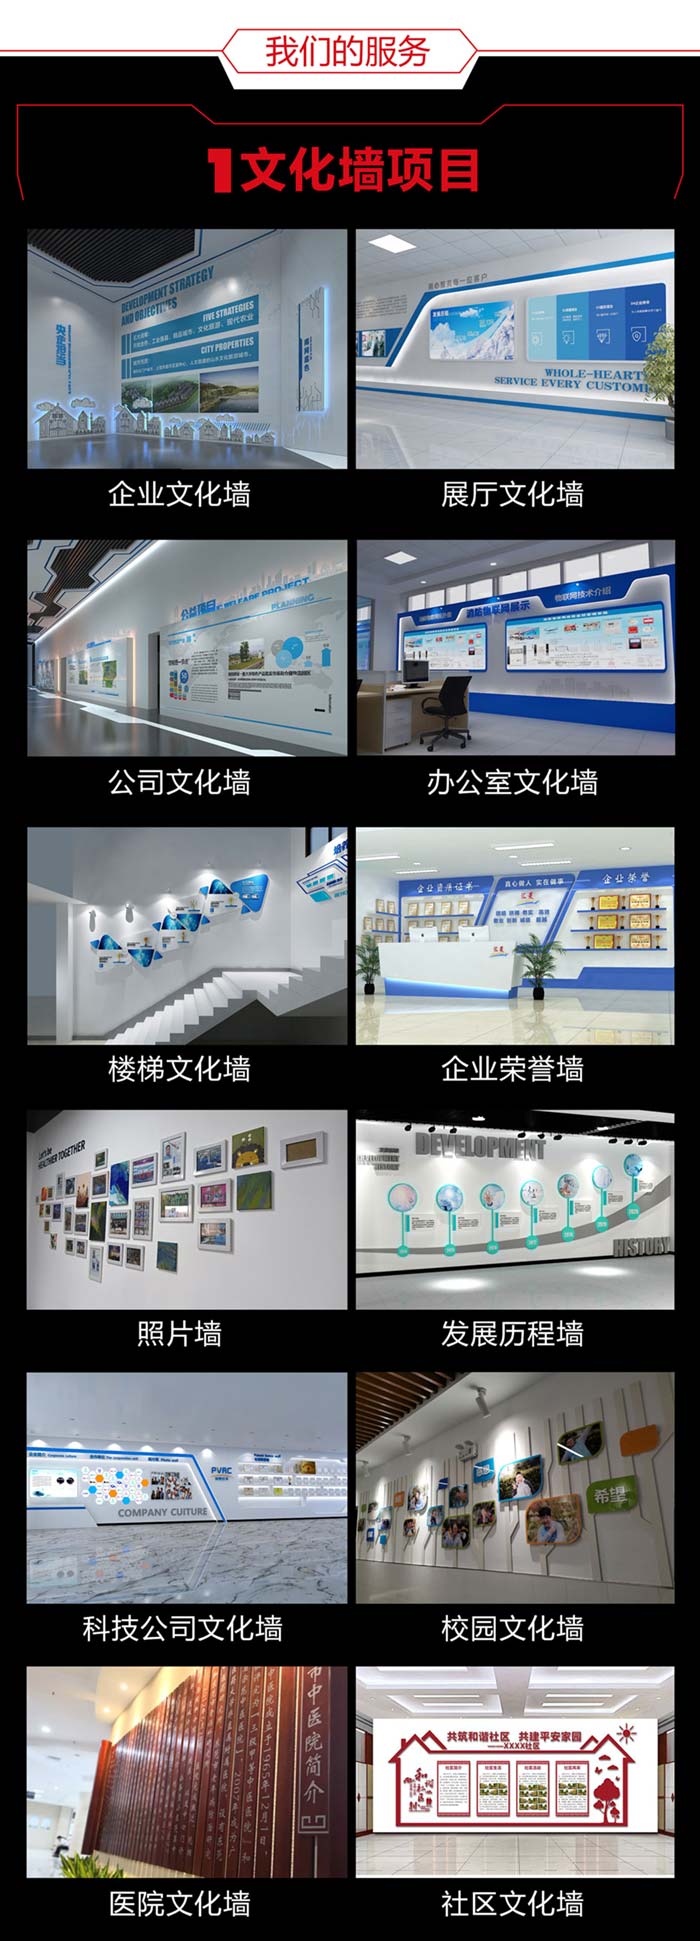 安龙安龙安龙文化墙设计详情页700切片图_04.jpg